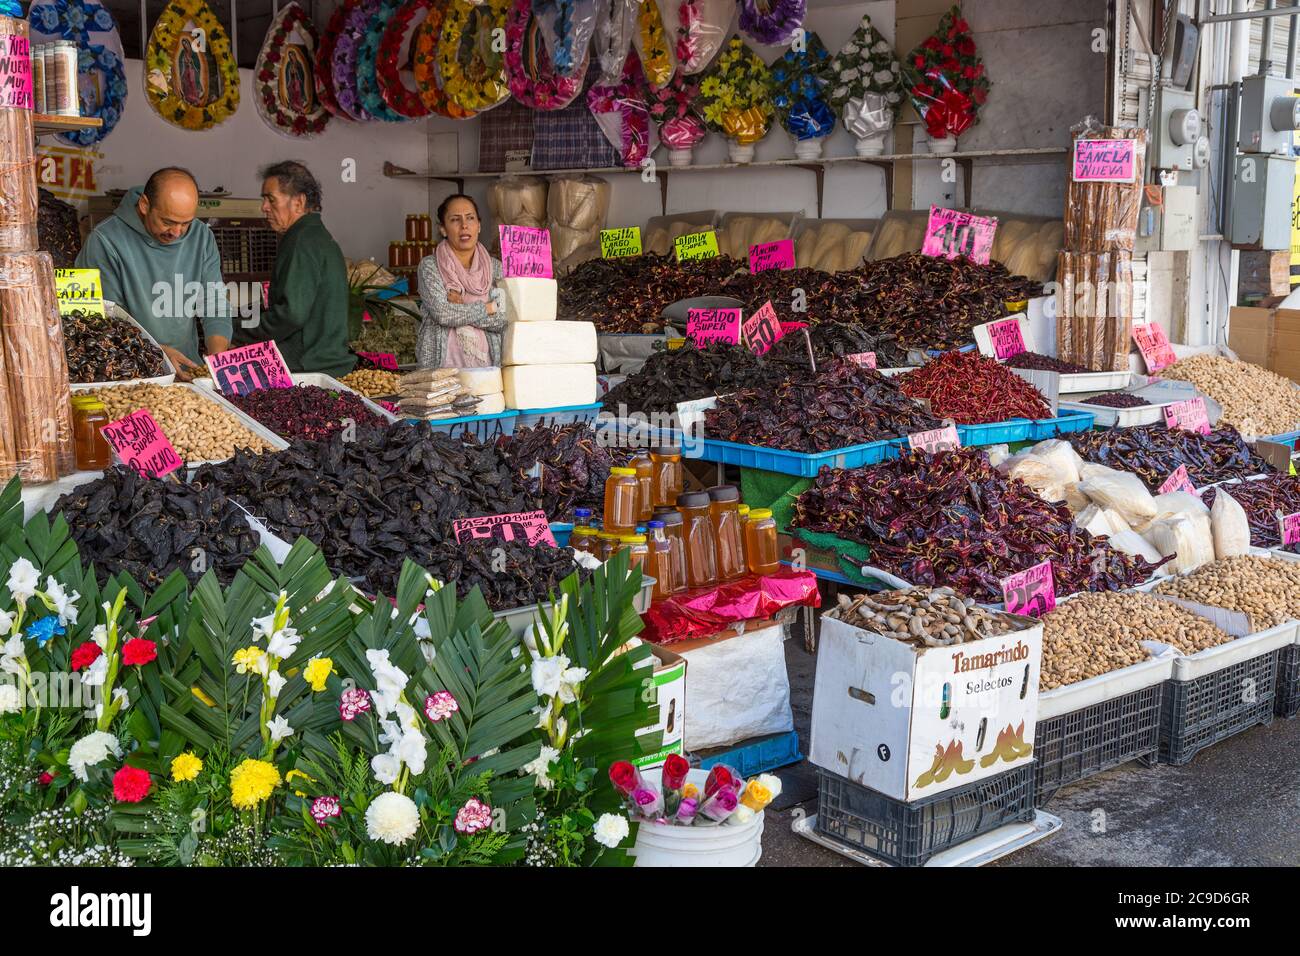 Ciudad Juarez, Chihuahua, Mexiko. Anbieter von Tamarind, Chili Peppers, Erdnüsse und Blumen. Stockfoto